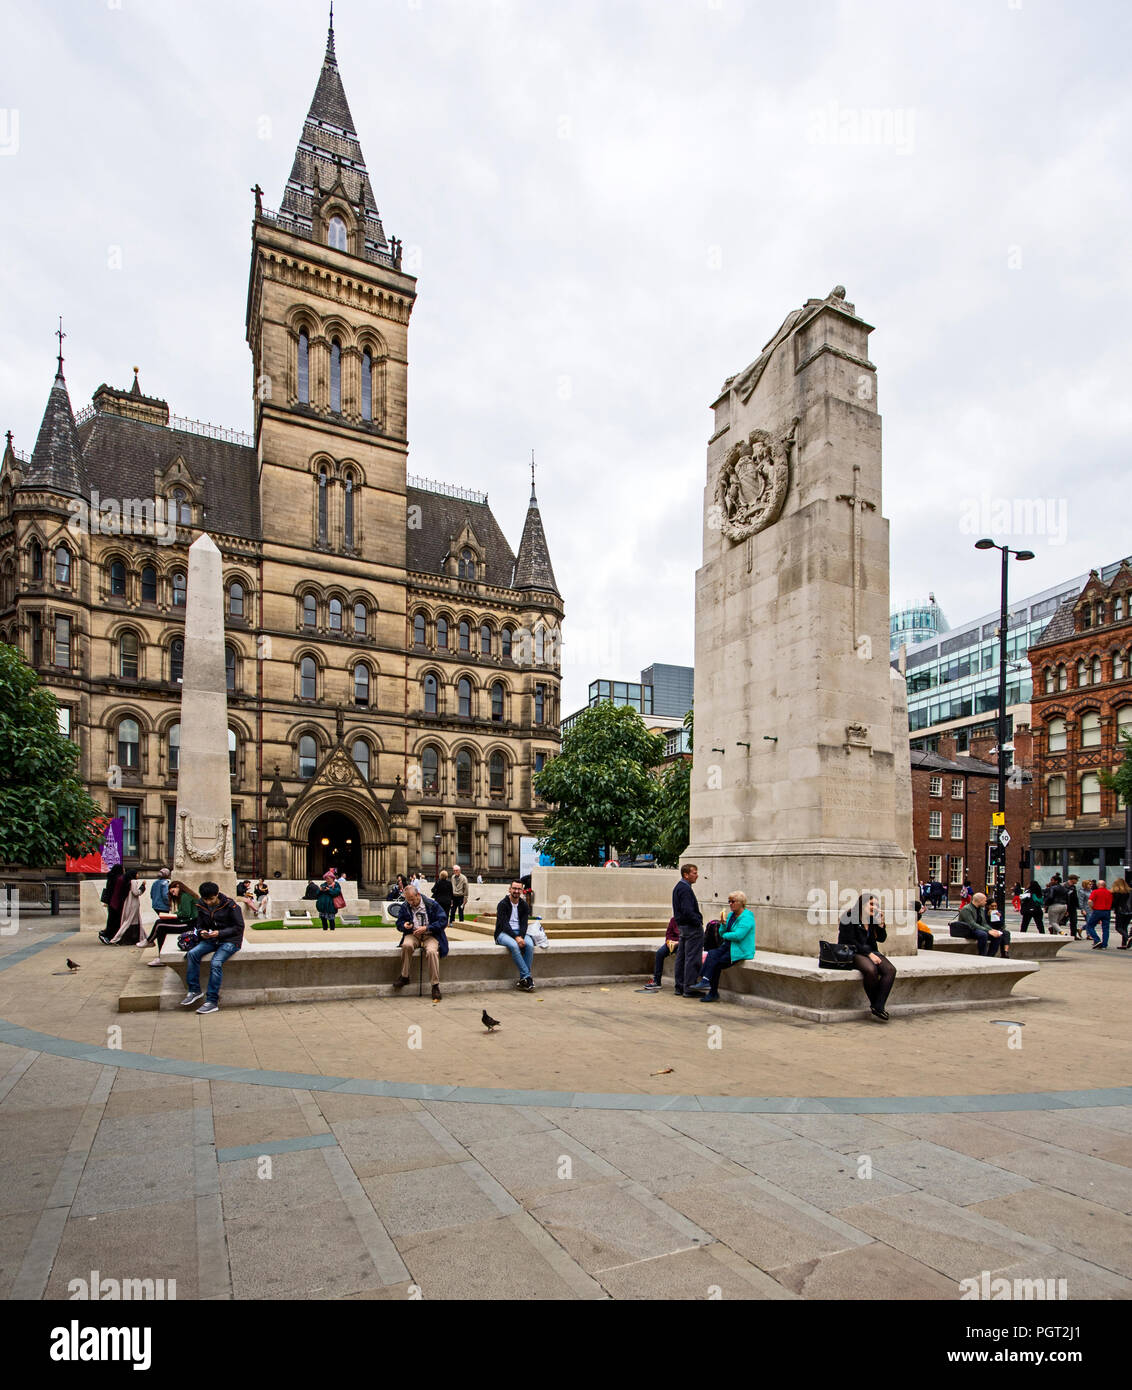 Manchester War Memorial cenotafio en la Plaza de San Pedro, Manchester, Inglaterra diseñado por Sir Edward Luytens erigida en 1924 trasladó al sitio actual en 2014. Foto de stock